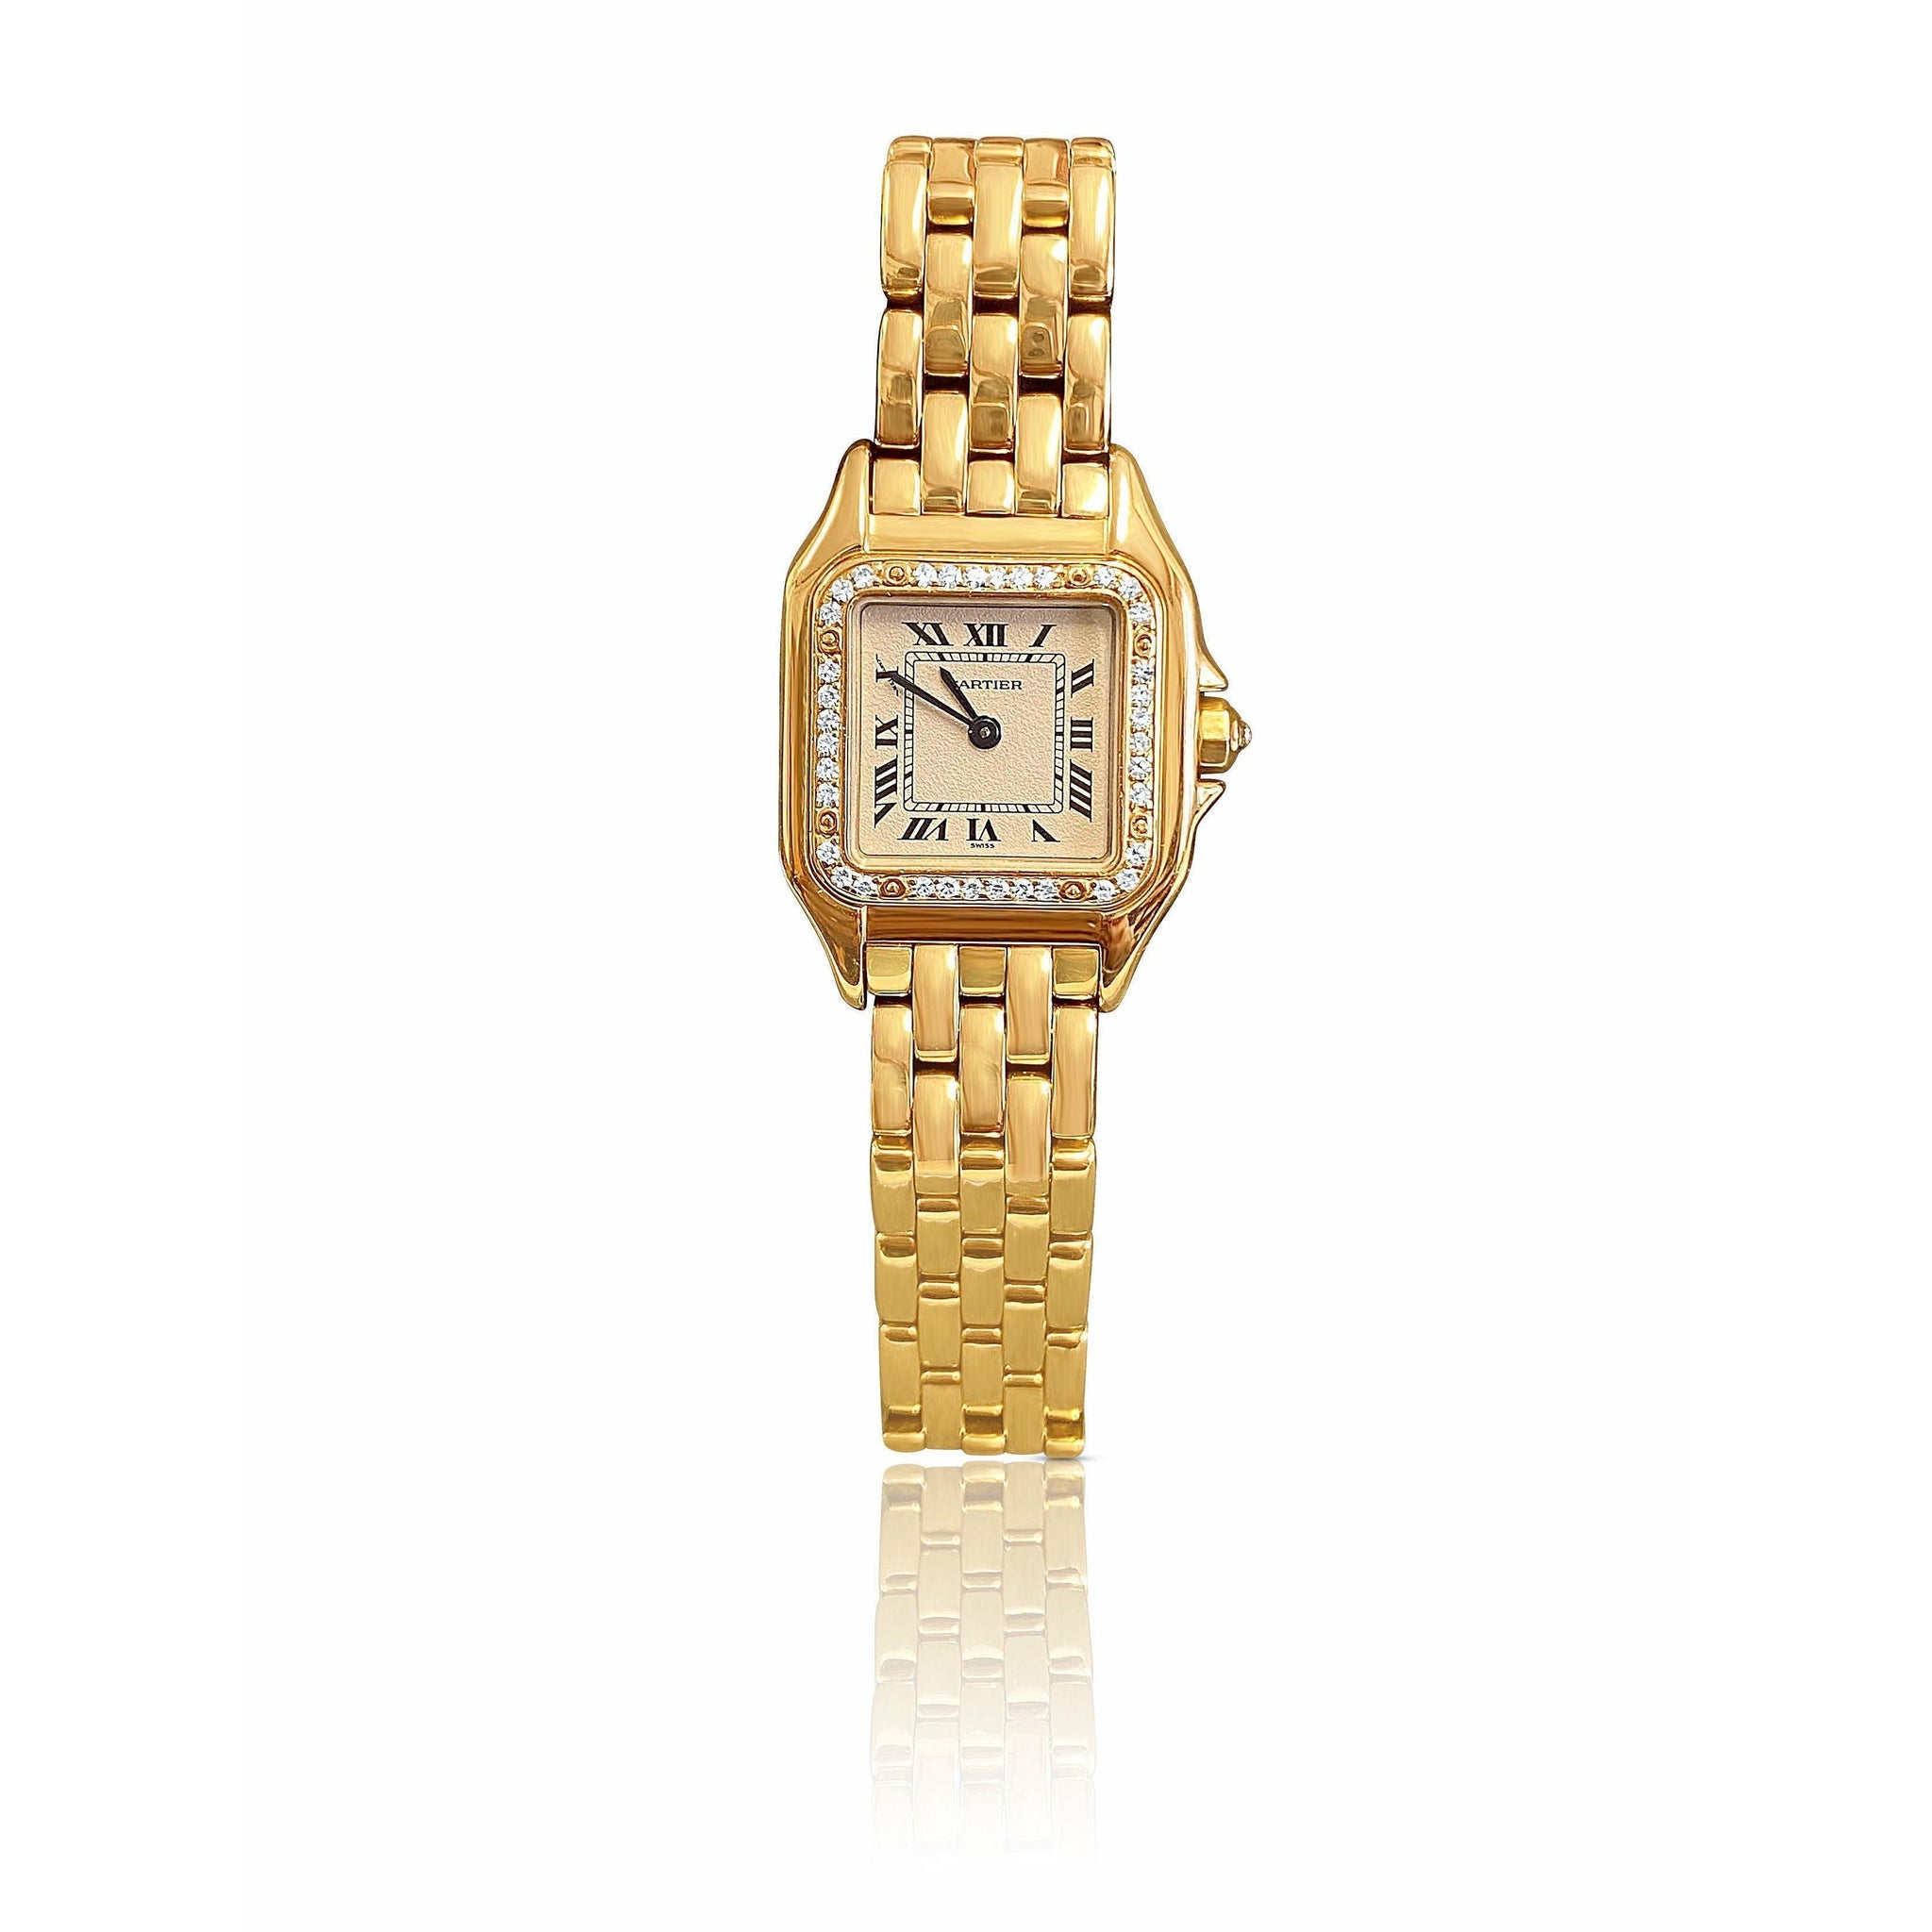 25mm Cartier Panthere Ladies Watch With Original Cartier Factory Diamond Bezel-watch-ASSAY